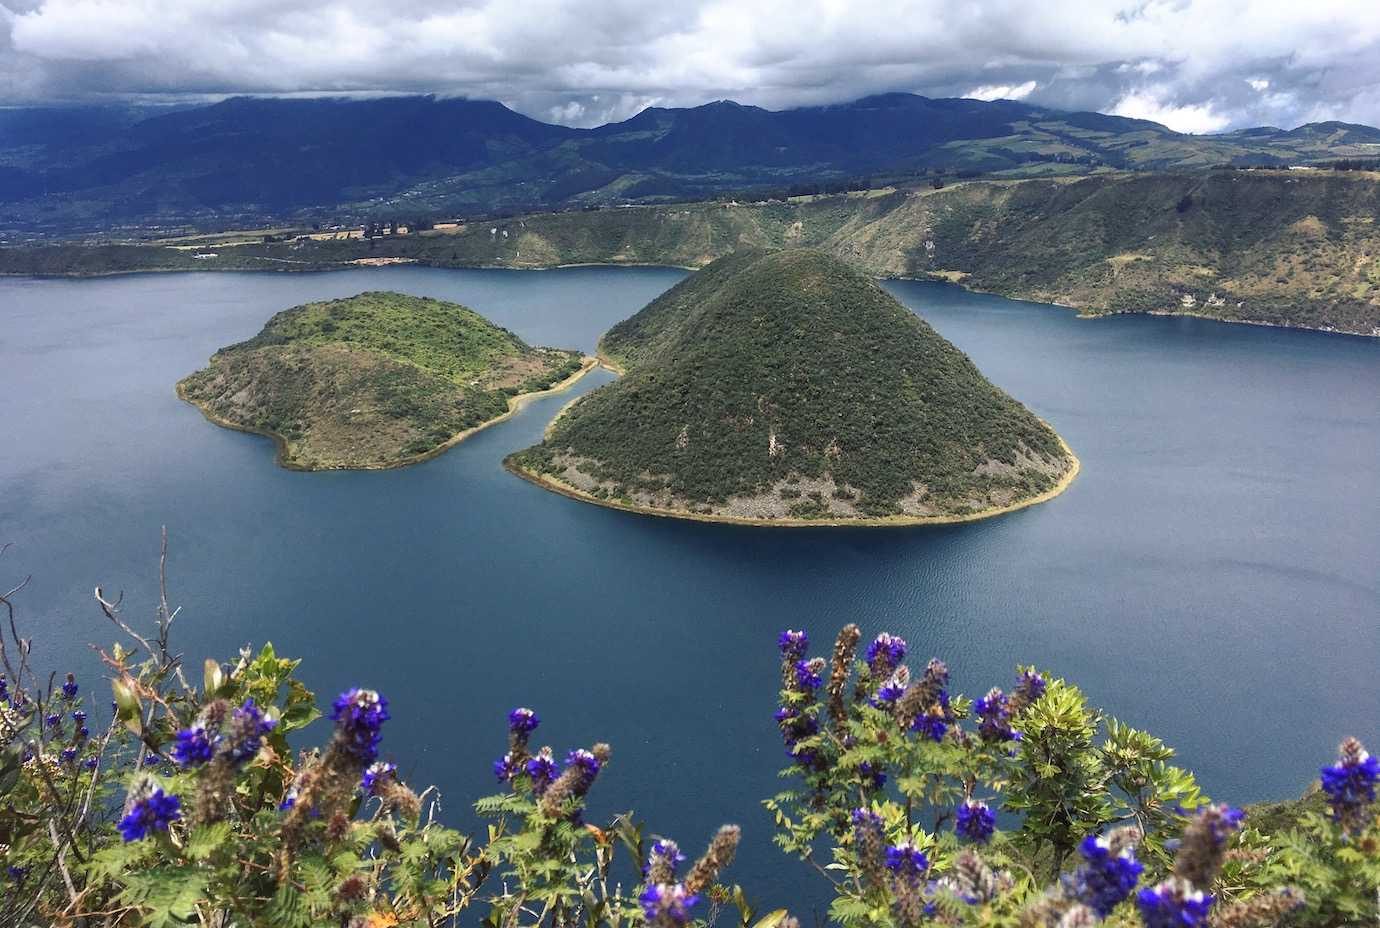 Otavalo: Last stop in Ecuador